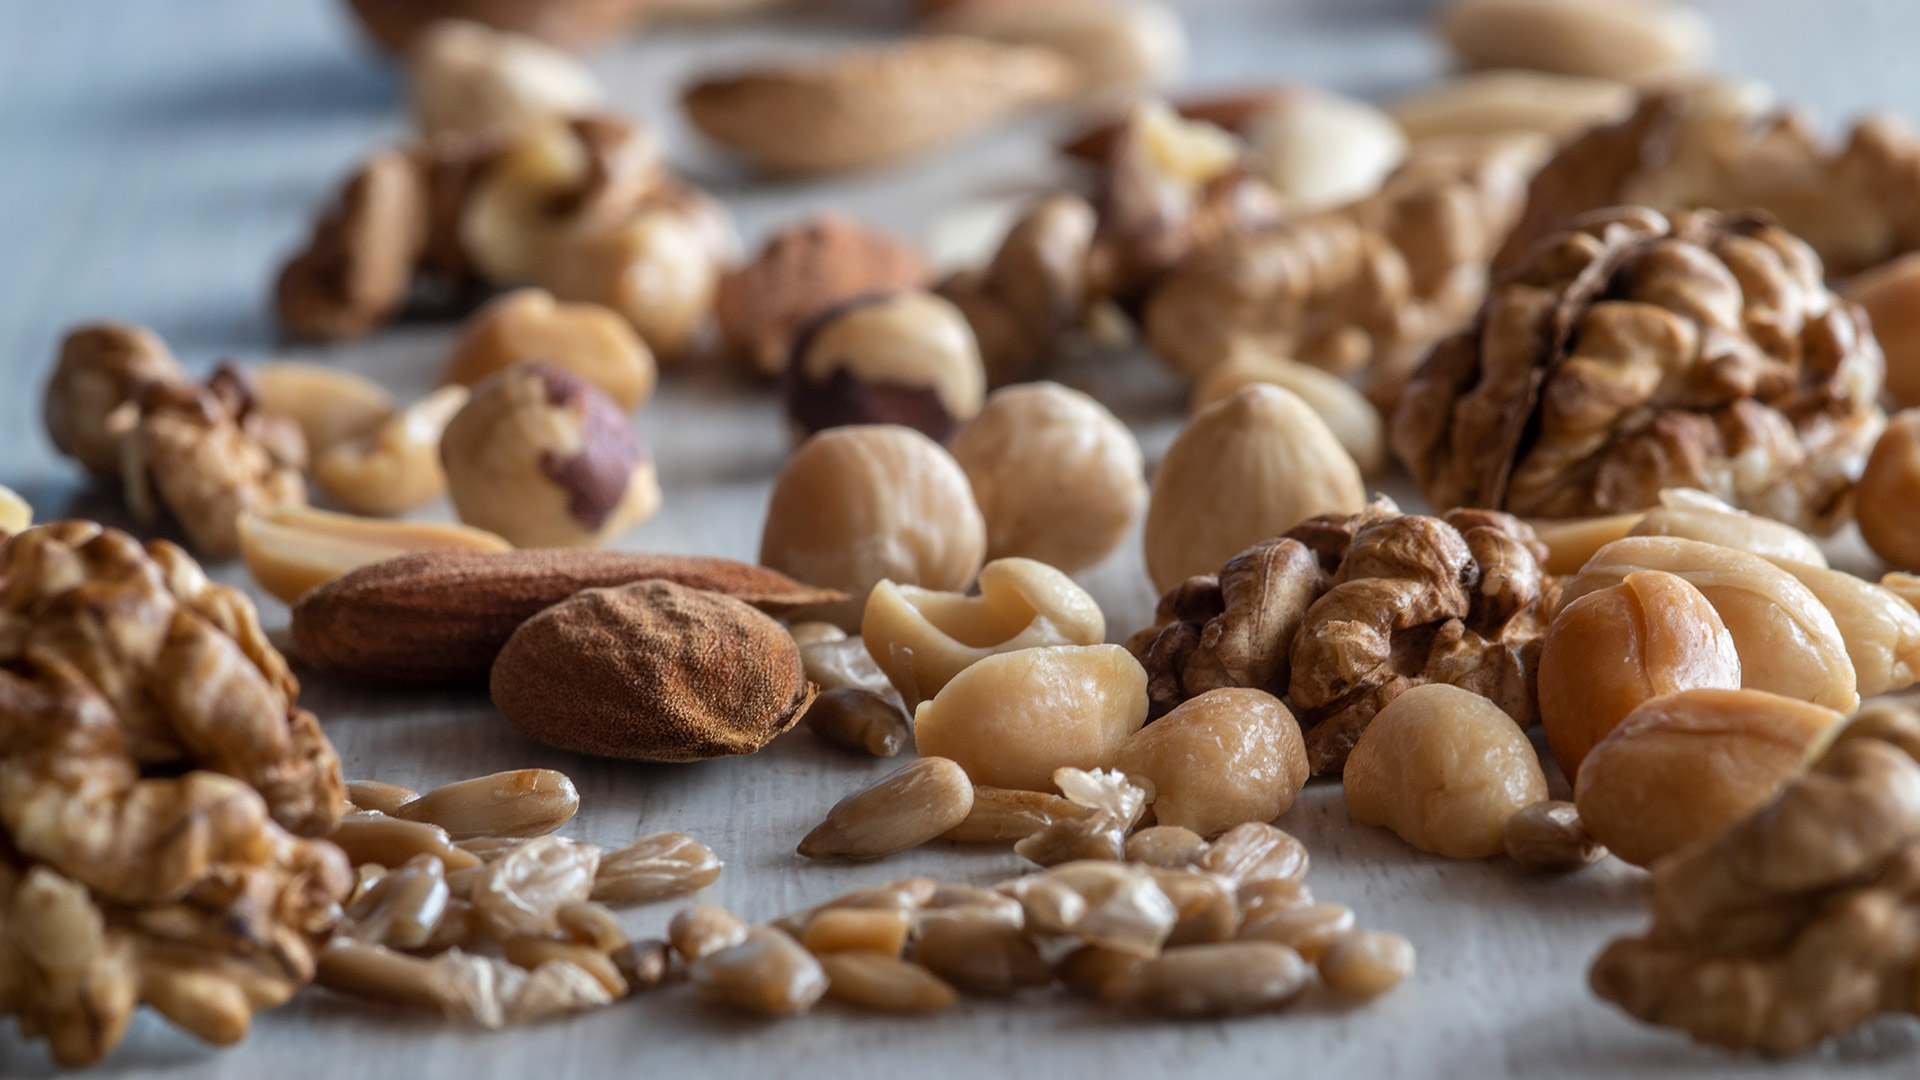 "Agregar incluso una pequeña cantidad de nueces y maní a la dieta podría ser un enfoque simple pero efectivo para ayudar a reducir el riesgo de enfermedad cardiovascular" (Getty)